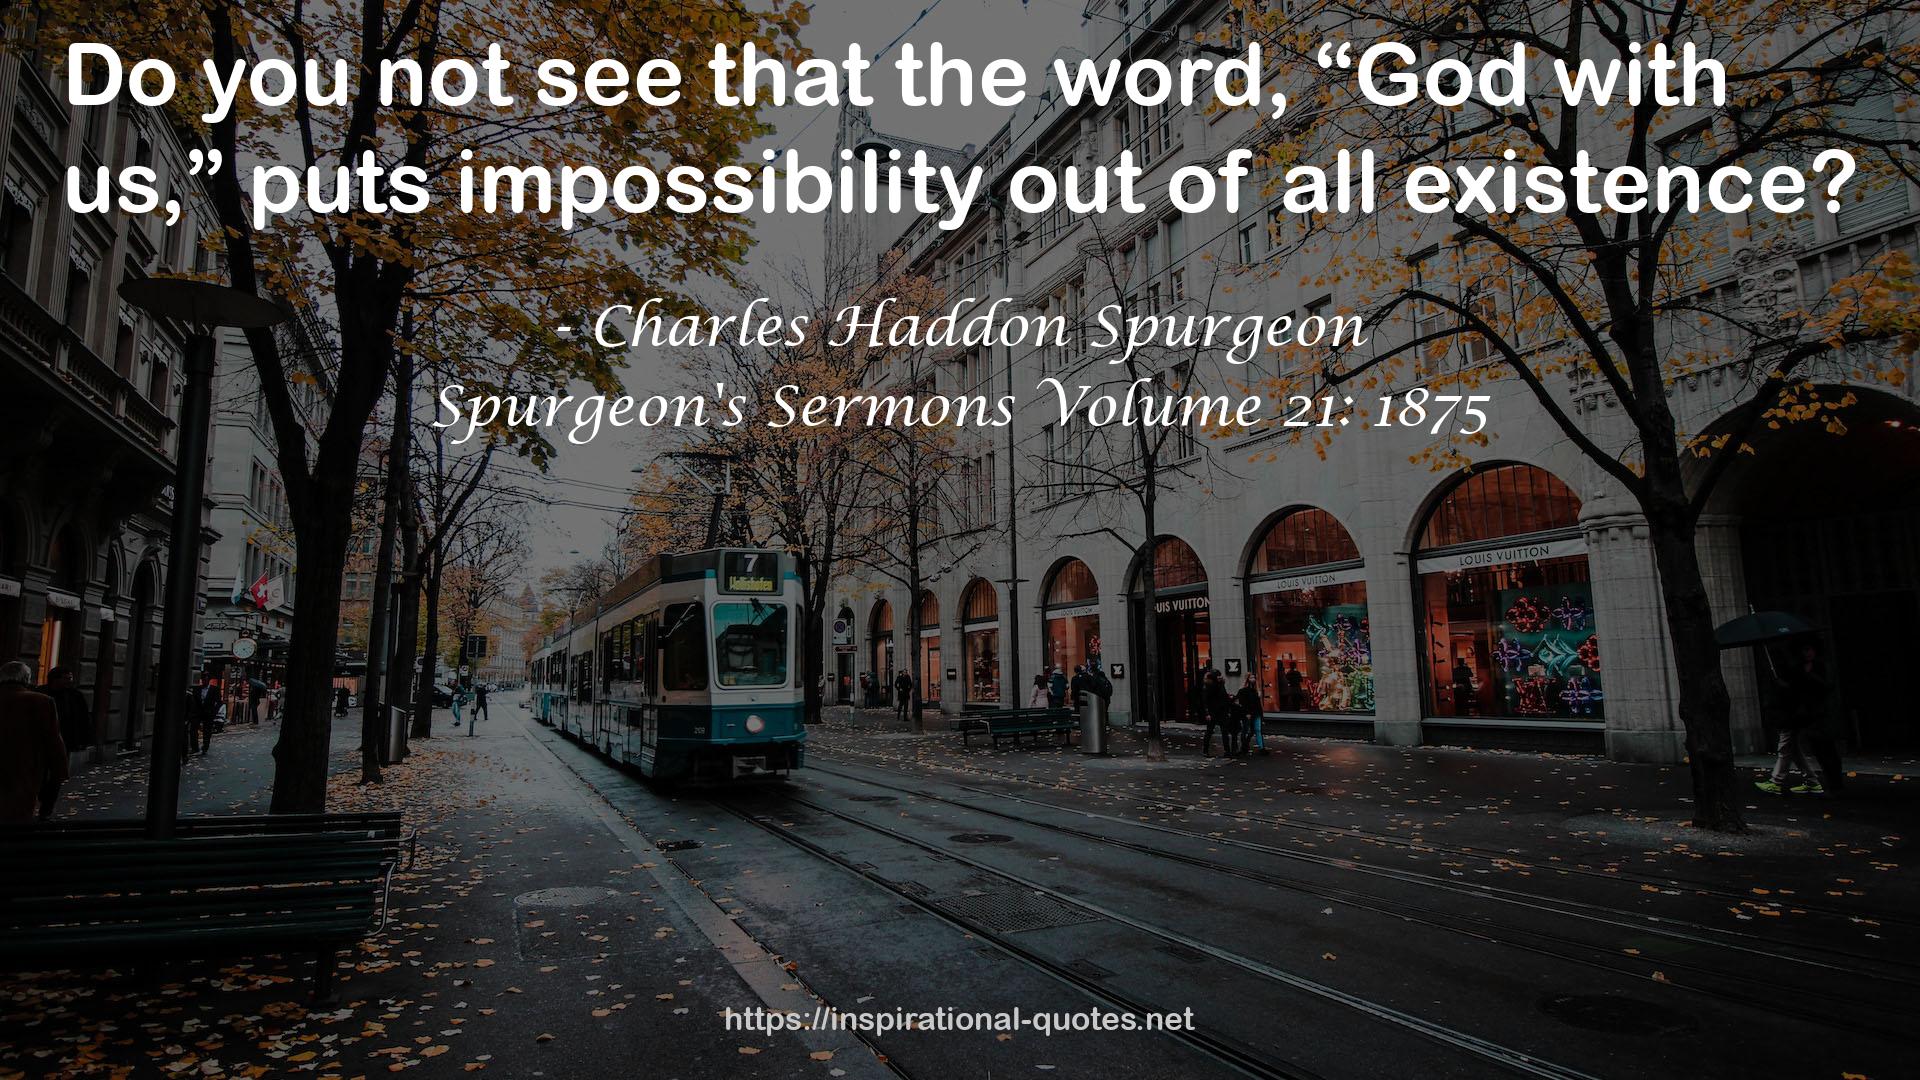 Spurgeon's Sermons Volume 21: 1875 QUOTES